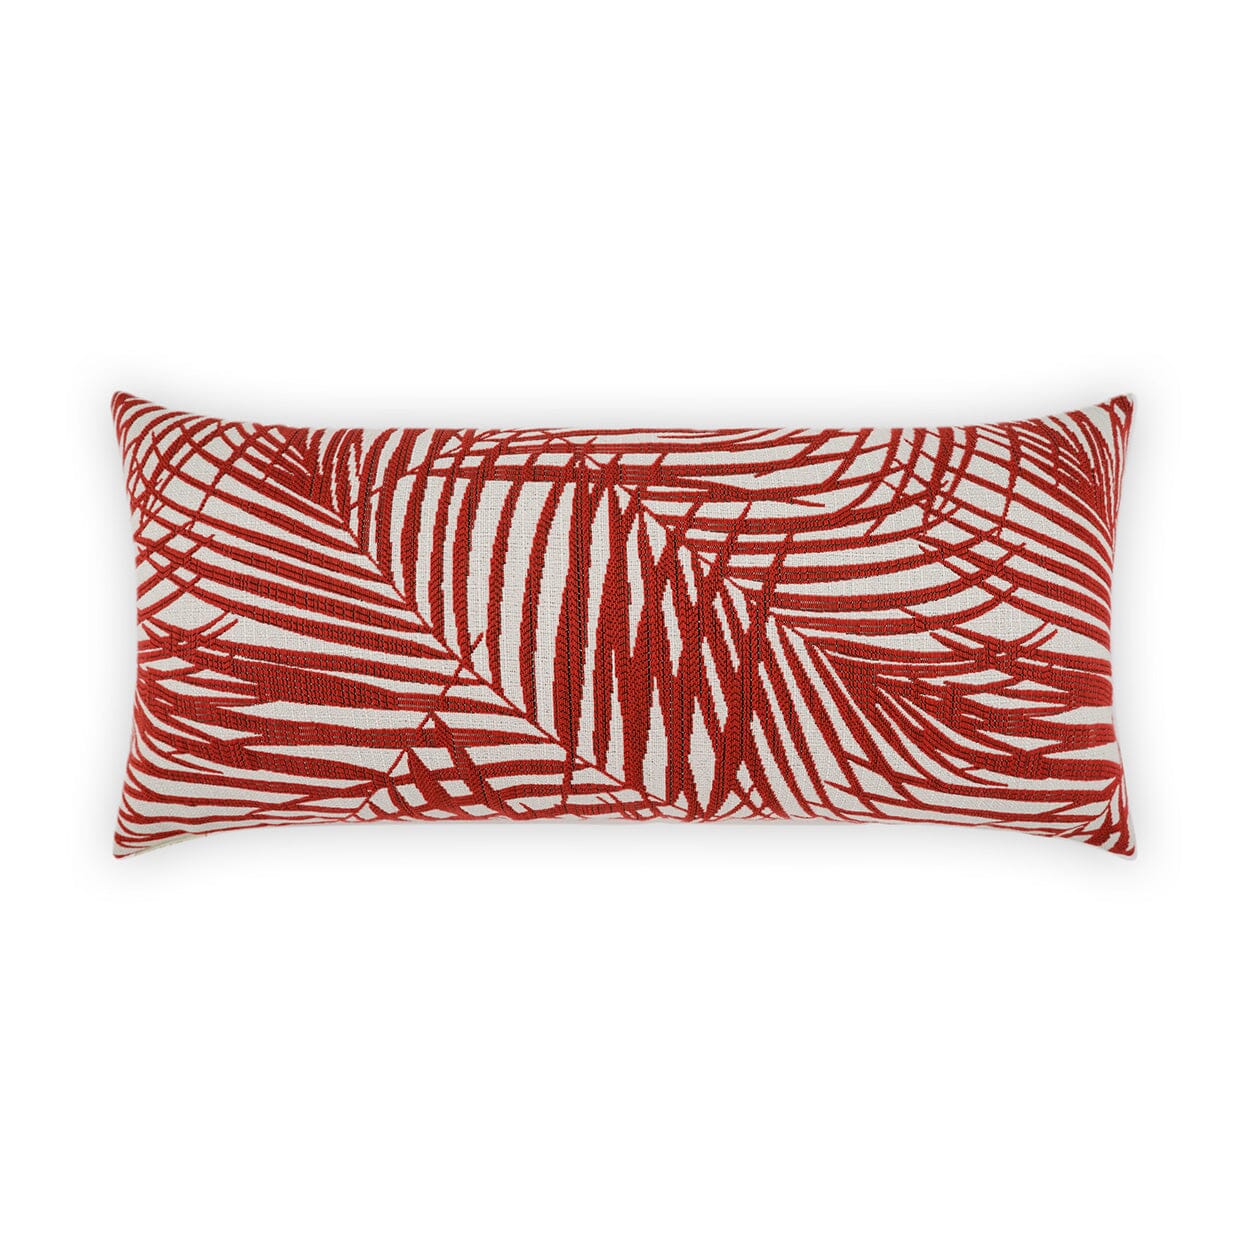 D.V. Kap 12" x 24" Outdoor Lumbar Pillow | Prudy Red Lumbar Pillows D.V Kap Outdoor